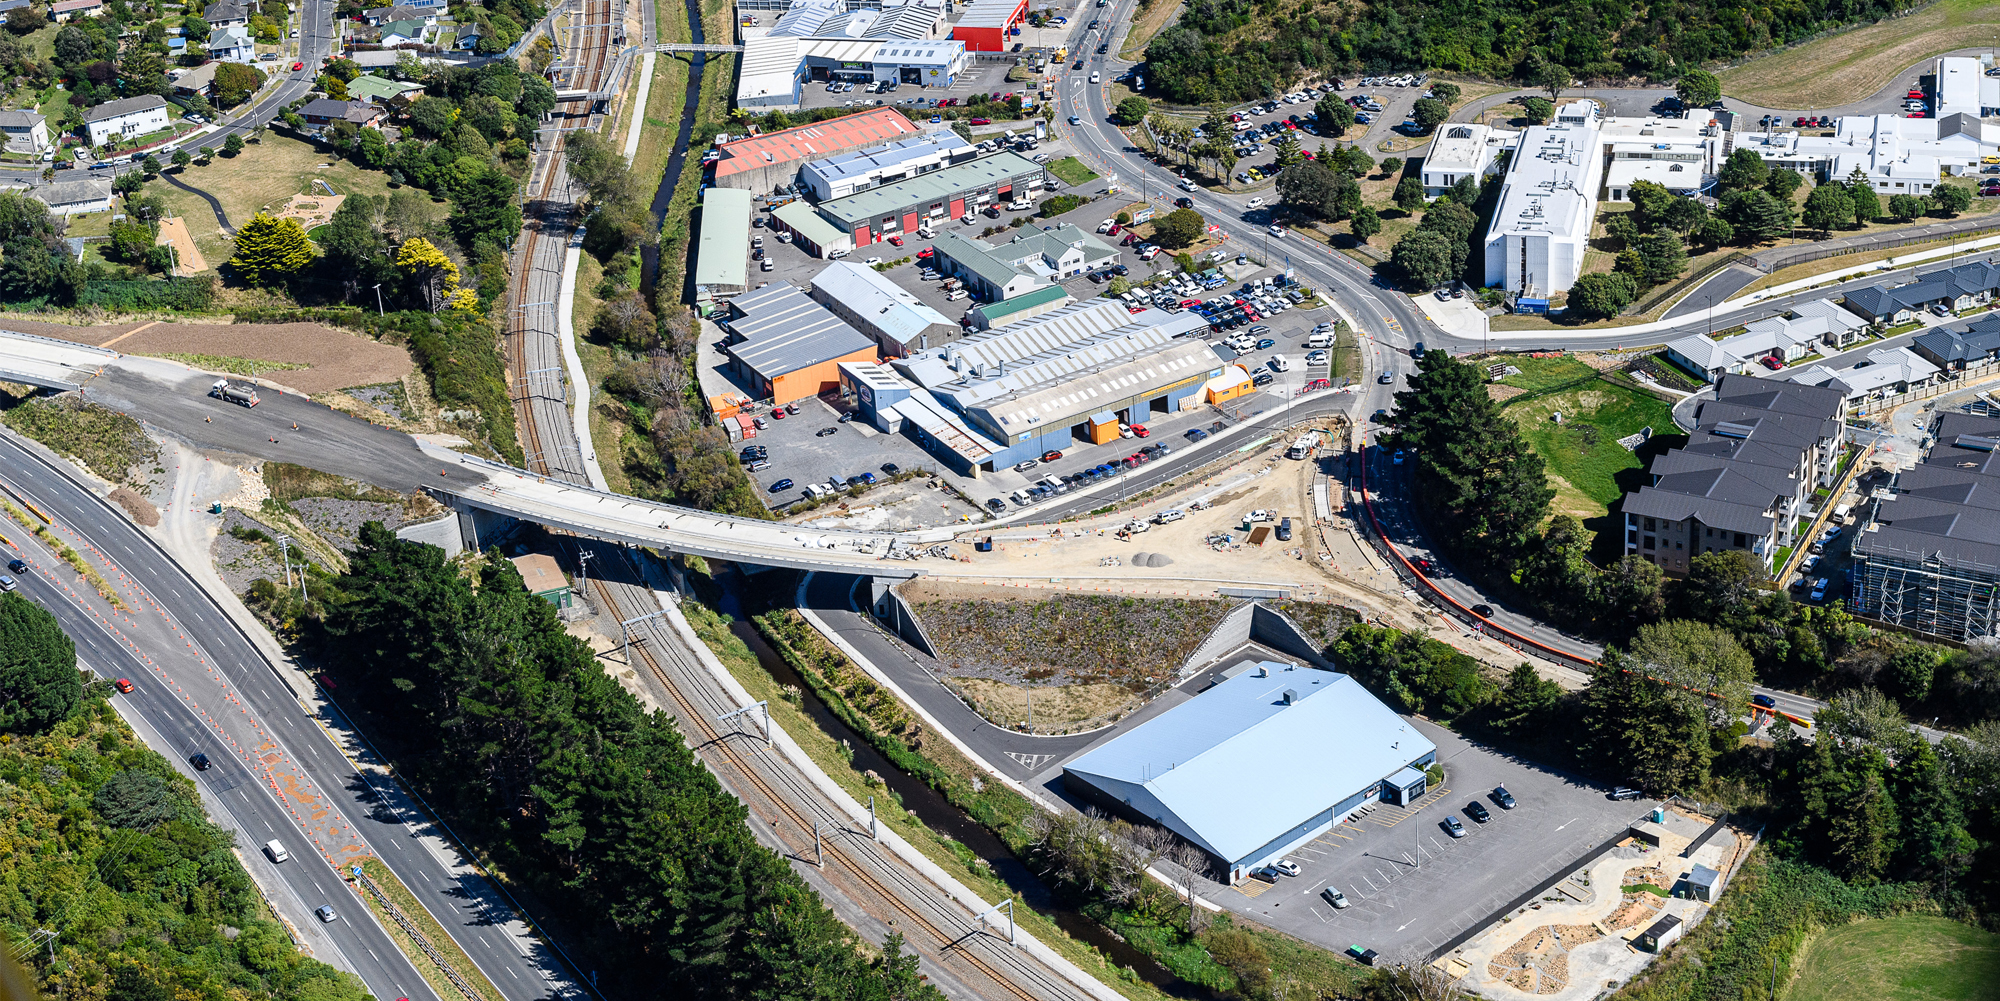 Aerial view over new Kenepuru interchange with road still under construction.